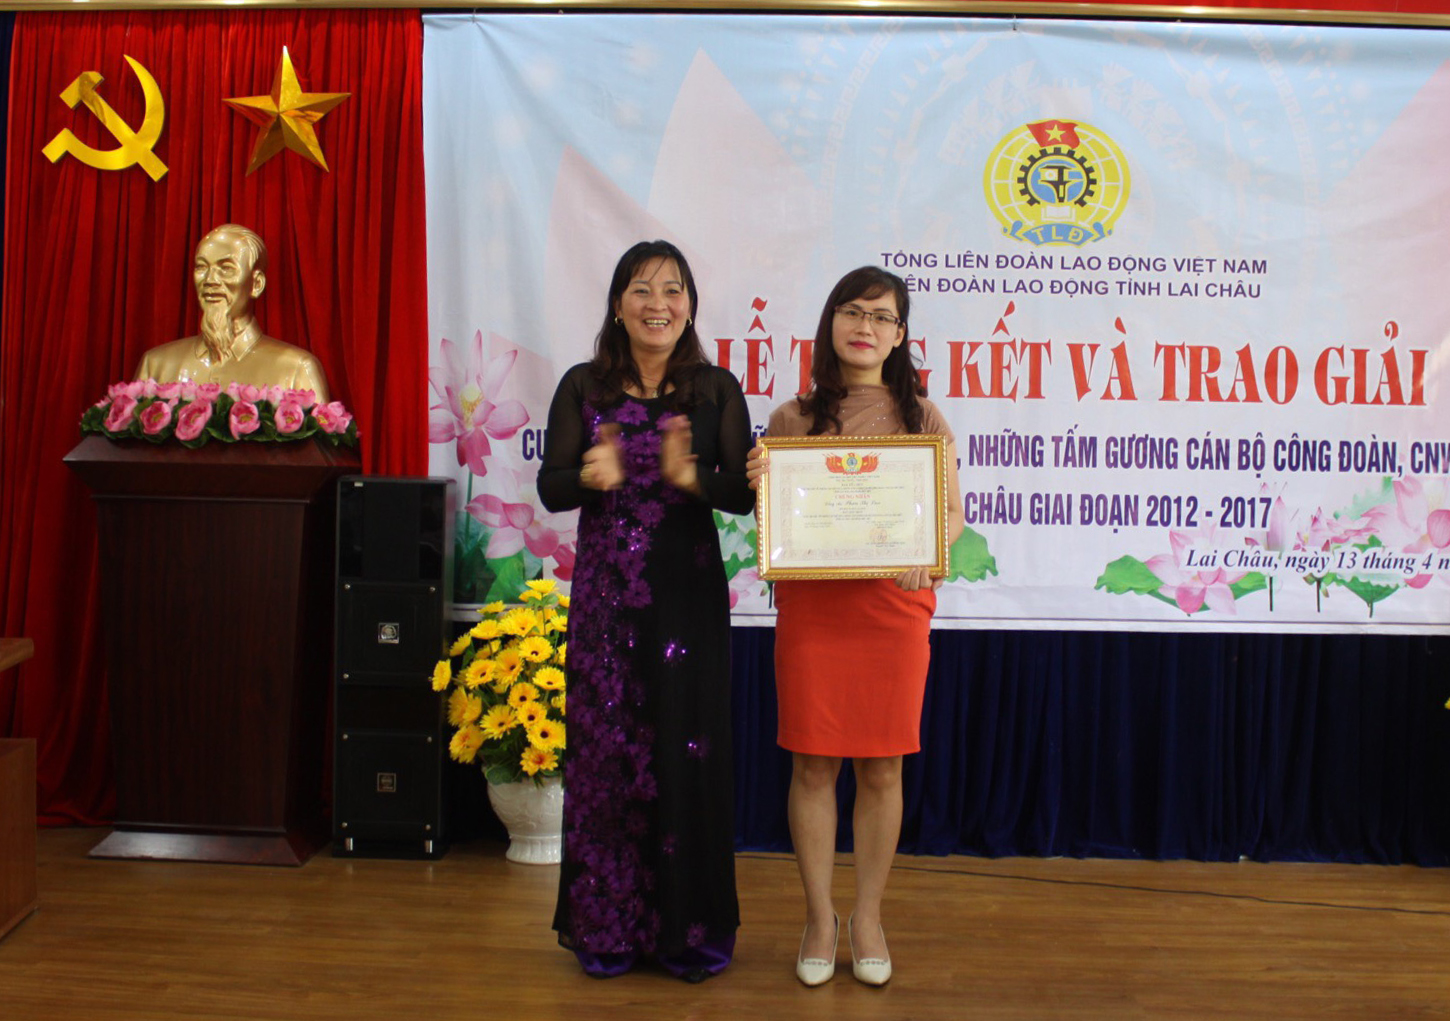 Đồng chí Nguyễn Thị Thiện - Trưởng Ban tổ chức trao giải cho tác giải đạt giải